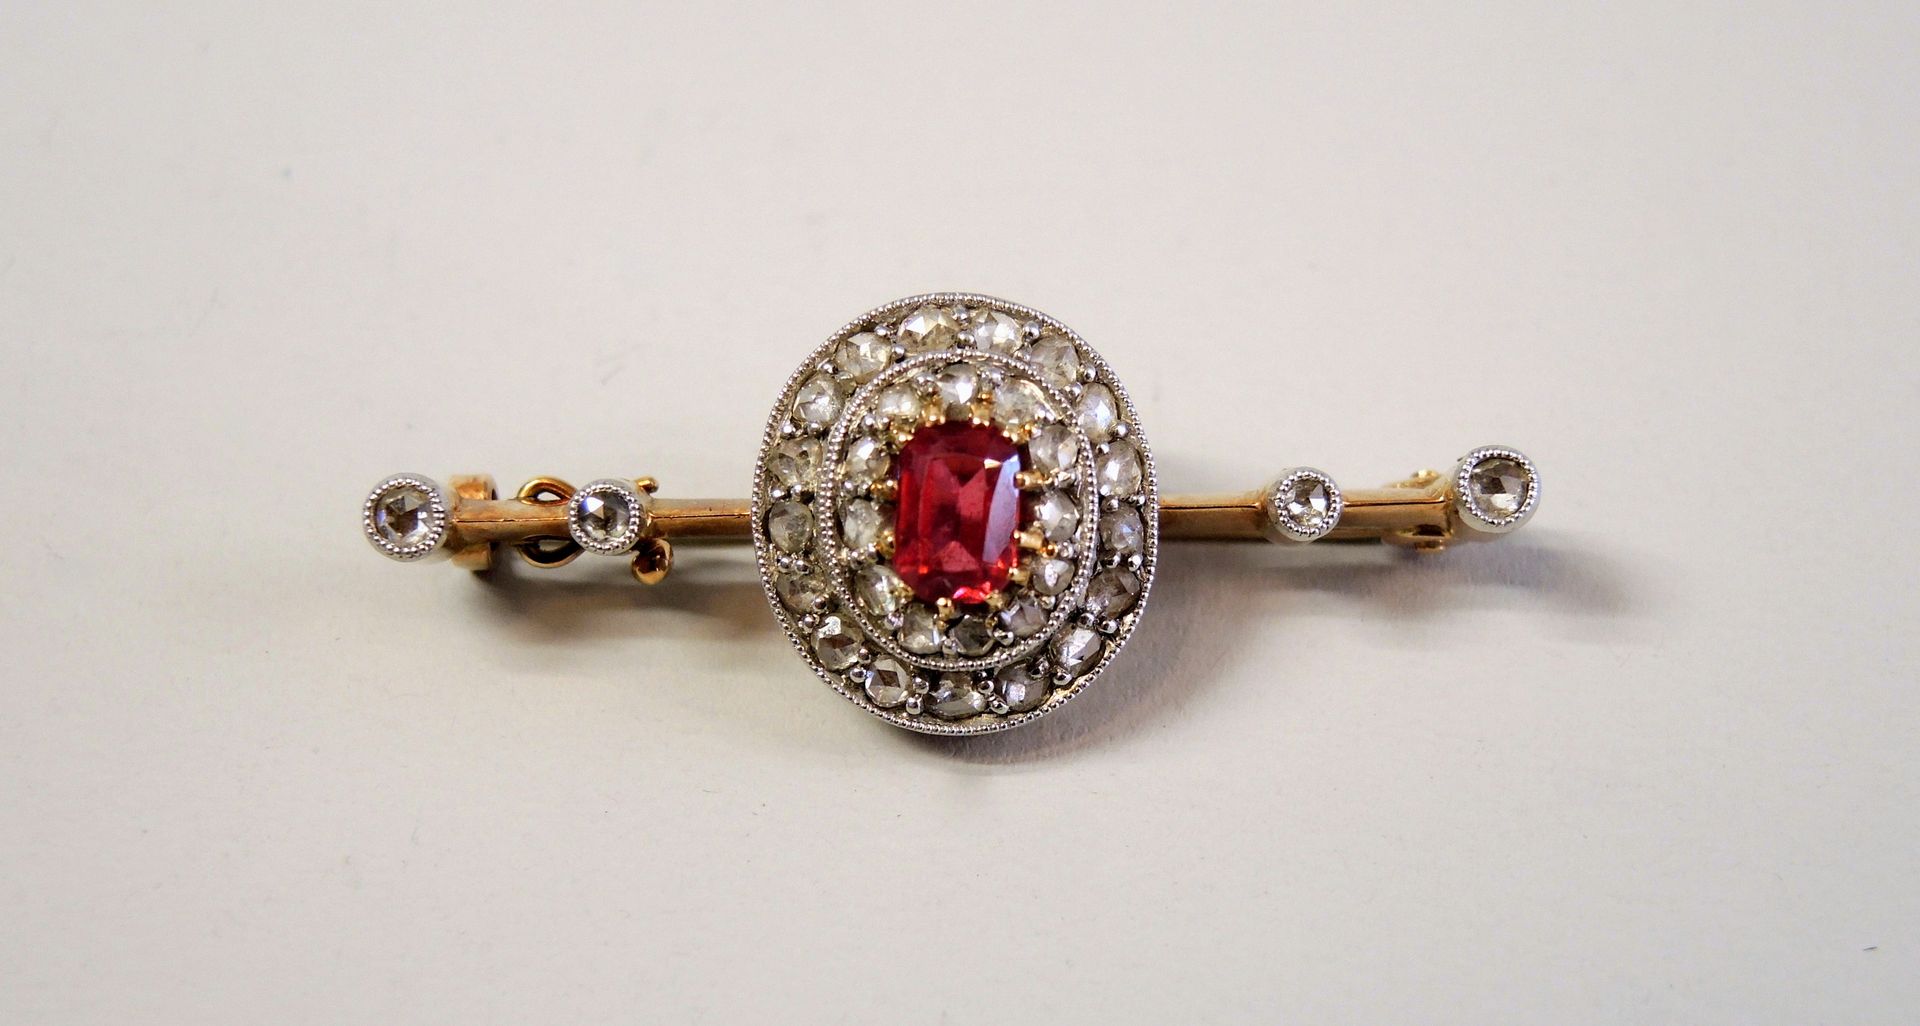 Feine Stabbrosche 14K黄金。胸针上镶嵌着一颗约1克拉的红宝石，两边是总重约0.70克拉的钻石。非常漂亮的珠宝商的作品。可能是德国，1880年&hellip;